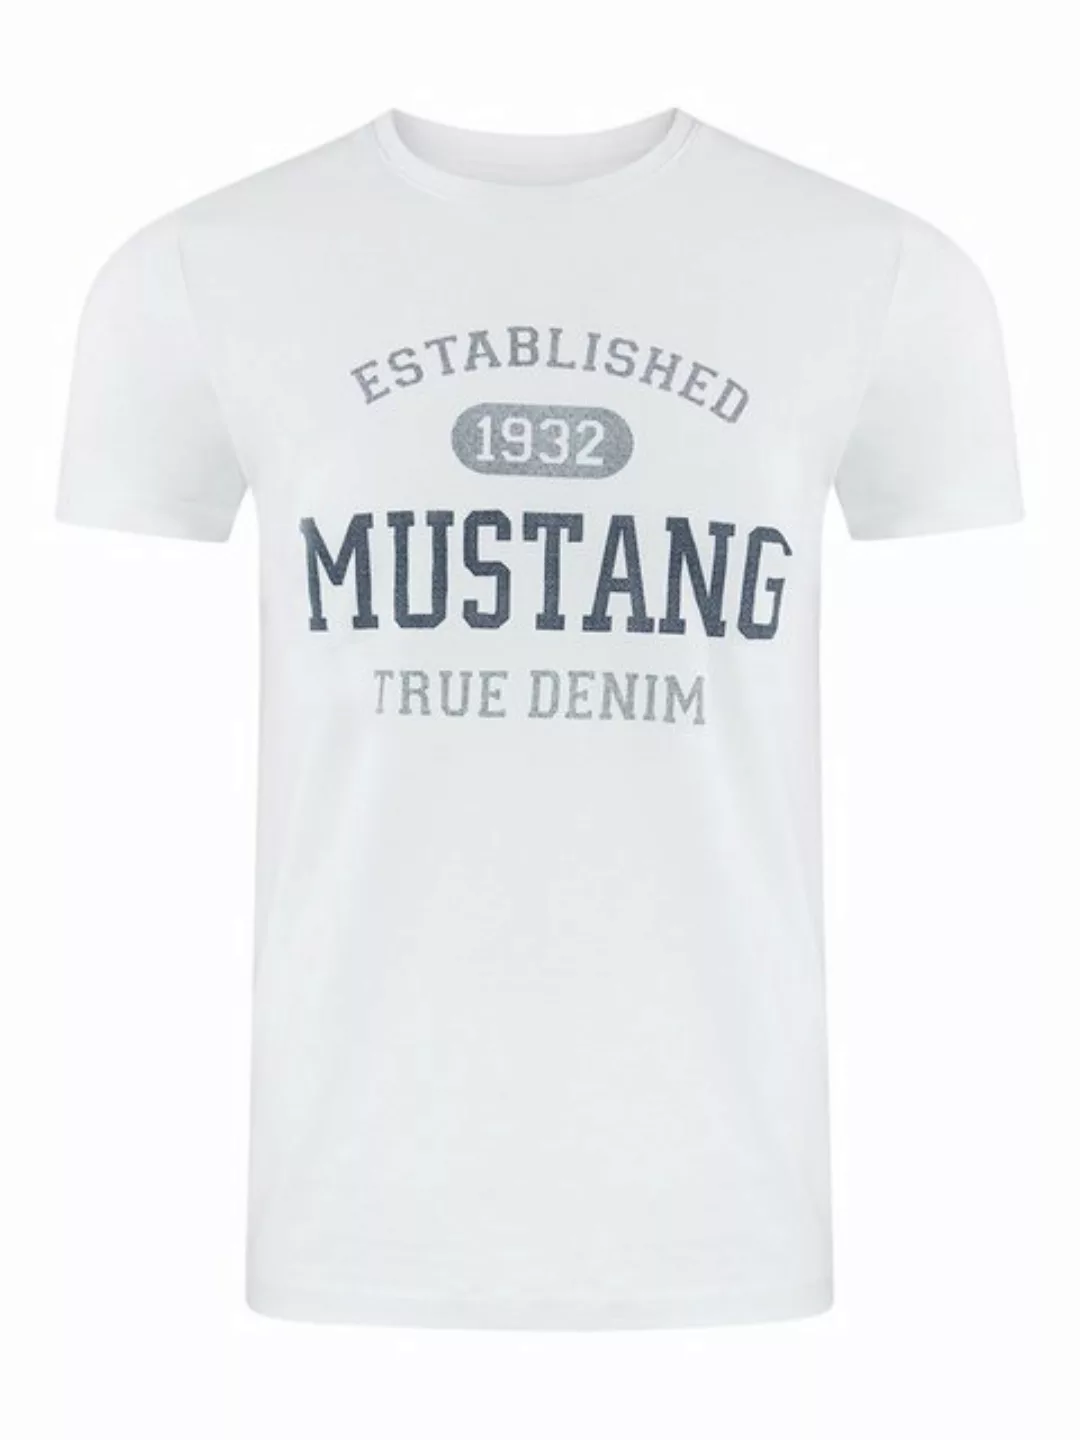 MUSTANG Tshirt Herren Regular Fit S bis 6XL günstig online kaufen